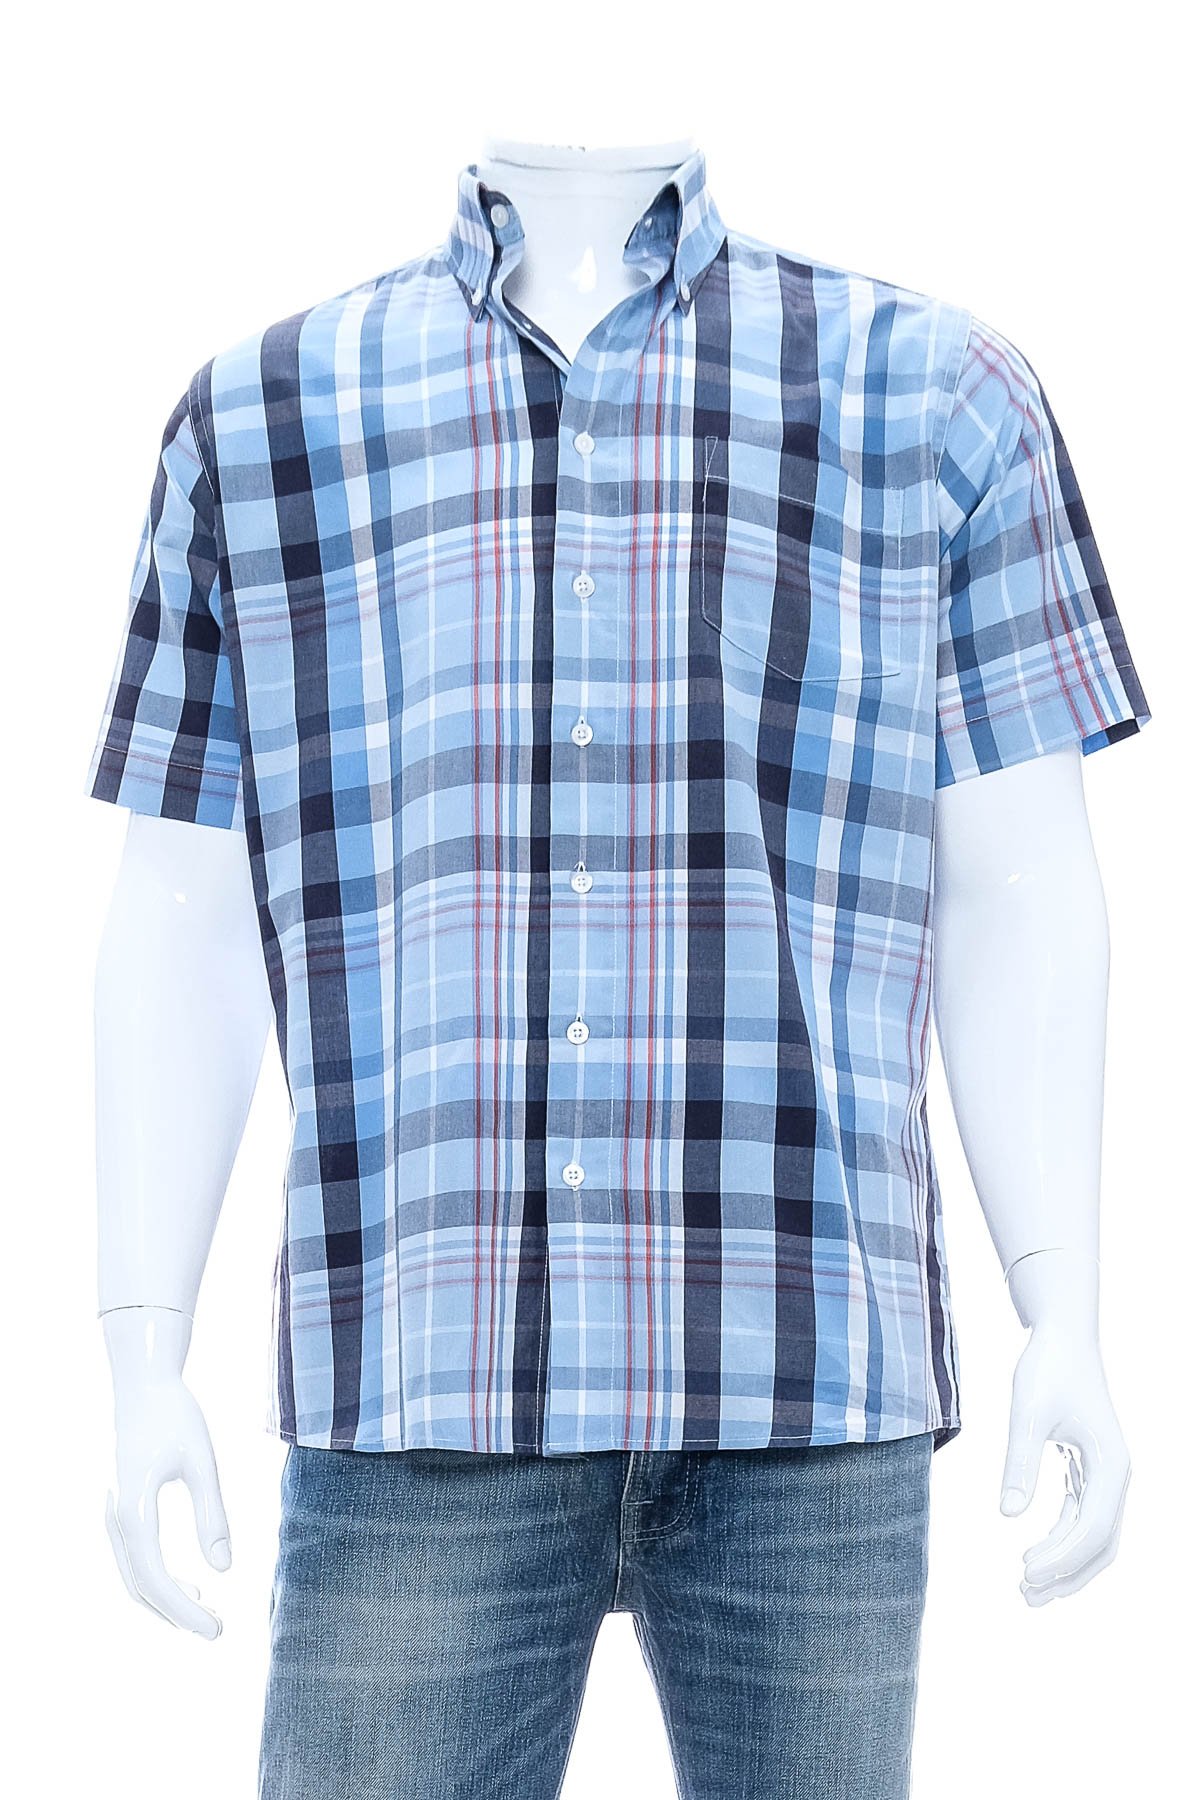 Ανδρικό πουκάμισο - Henderson - 0